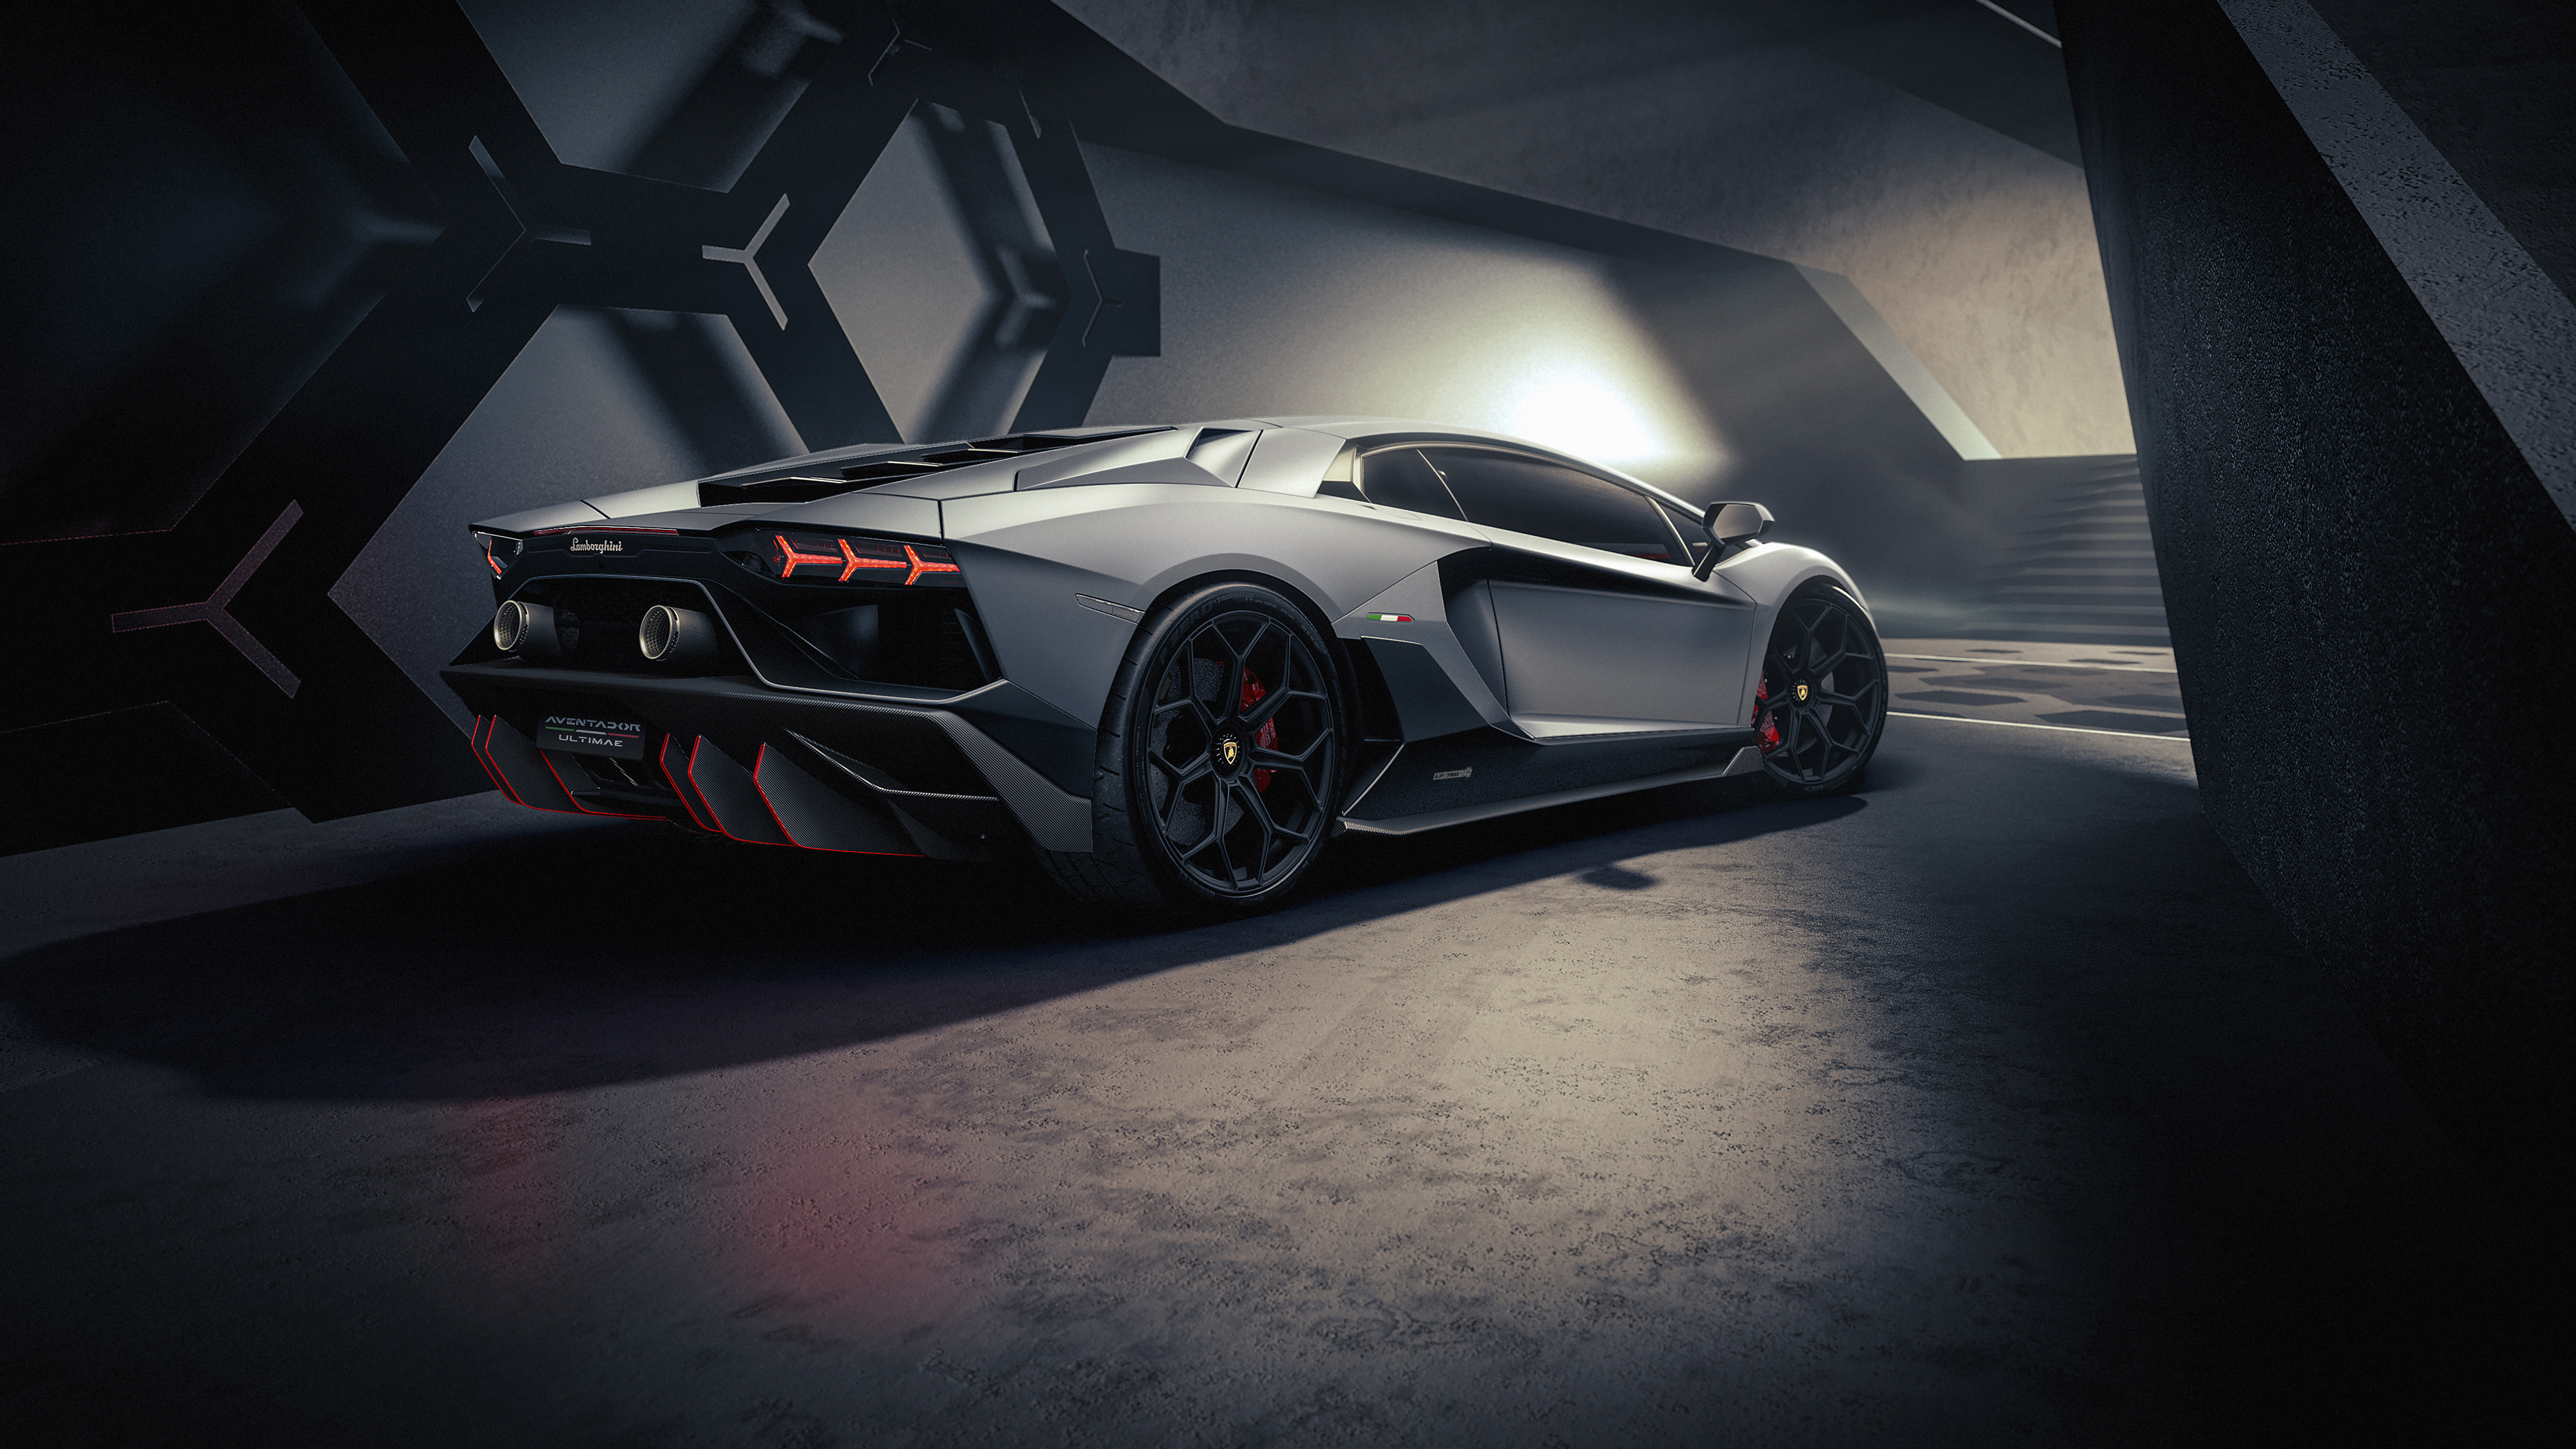 Lamborghini Aventador 5K Wallpaper: Bạn đang tìm kiếm một bức hình nền Lamborghini Aventador 5K đẹp và tuyệt vời? Hãy đến với chúng tôi, nơi cung cấp những hình ảnh nền chất lượng cao nhất và đặc biệt là chủ đề siêu xe. Bạn sẽ được thưởng thức và tải về các hình nền Aventador 5K đầy sự hấp dẫn và sức sống, để cảm nhận được đẳng cấp của mẫu xe siêu sang này.